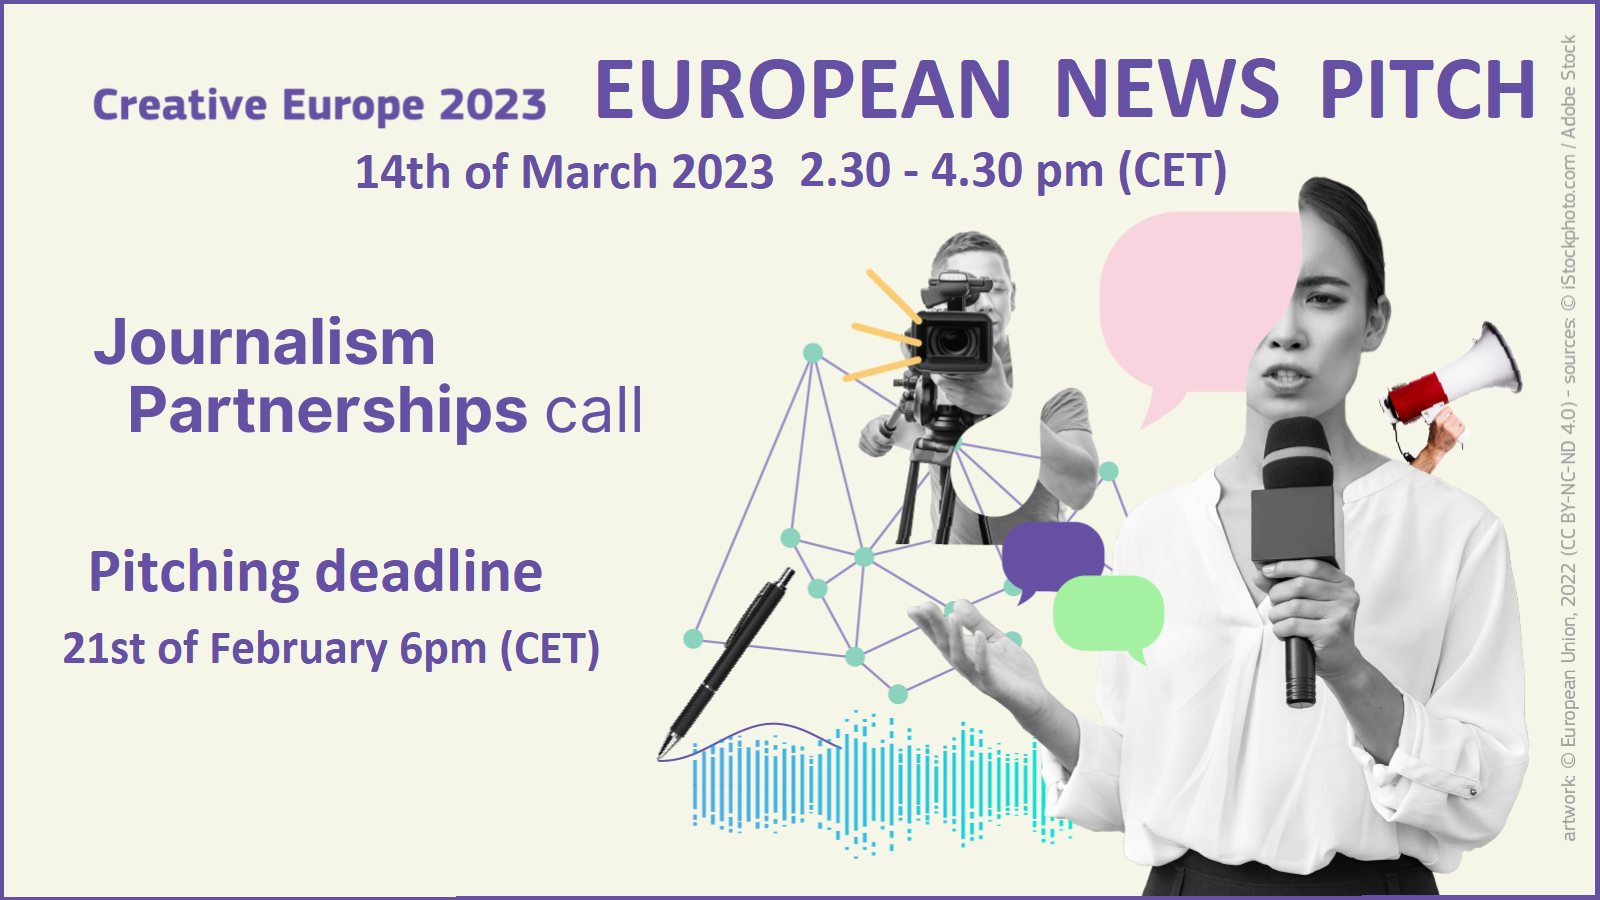 Segunda edición de «European News Pitch». Sesión internacional de pitching para la convocatoria de Asociaciones Periodísticas